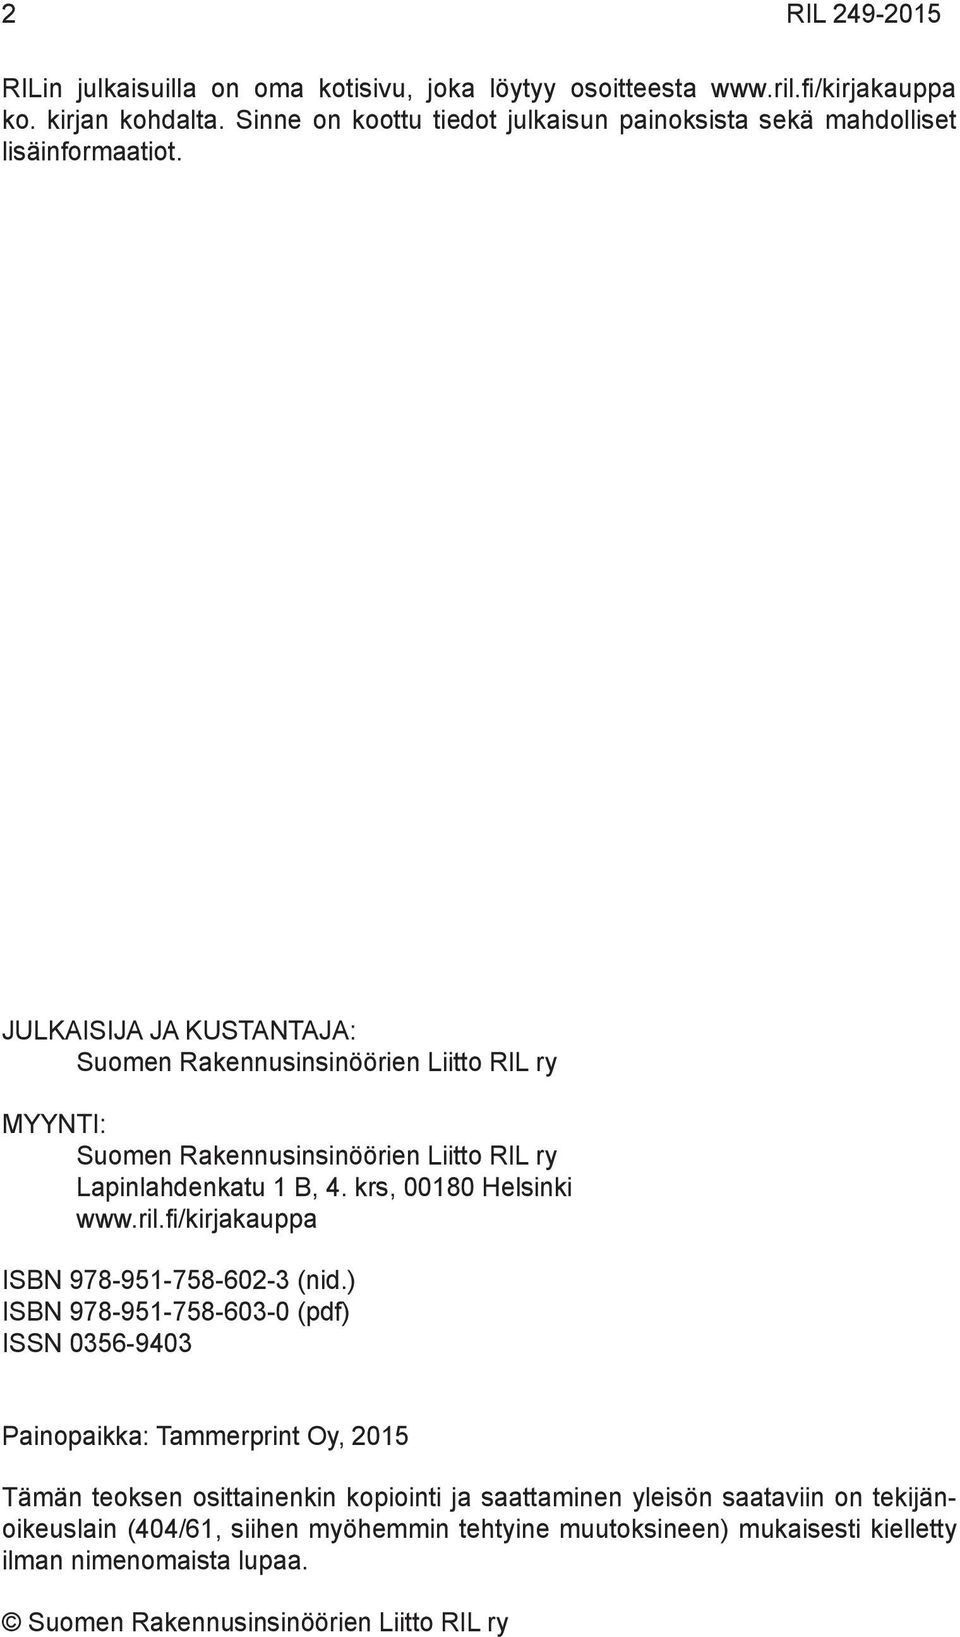 JULKAISIJA JA KUSTANTAJA: Suomen Rakennusinsinöörien Liitto RIL ry MYYNTI: Suomen Rakennusinsinöörien Liitto RIL ry Lapinlahdenkatu 1 B, 4. krs, 00180 Helsinki www.ril.